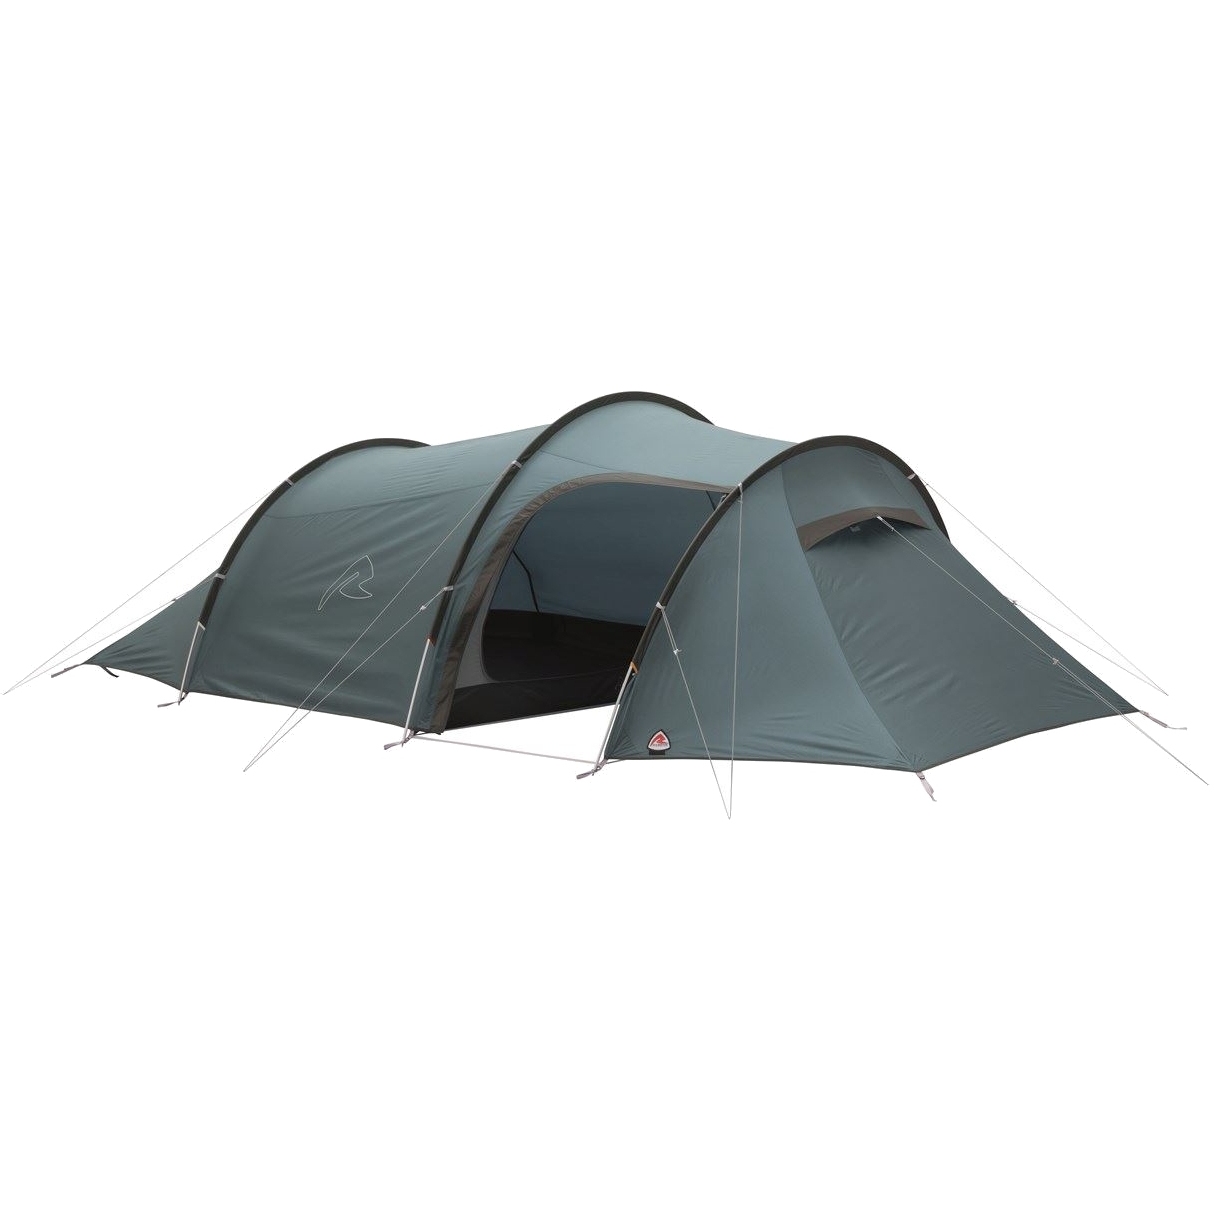 Productfoto van Robens Pioneer 4EX Tent - Blauw